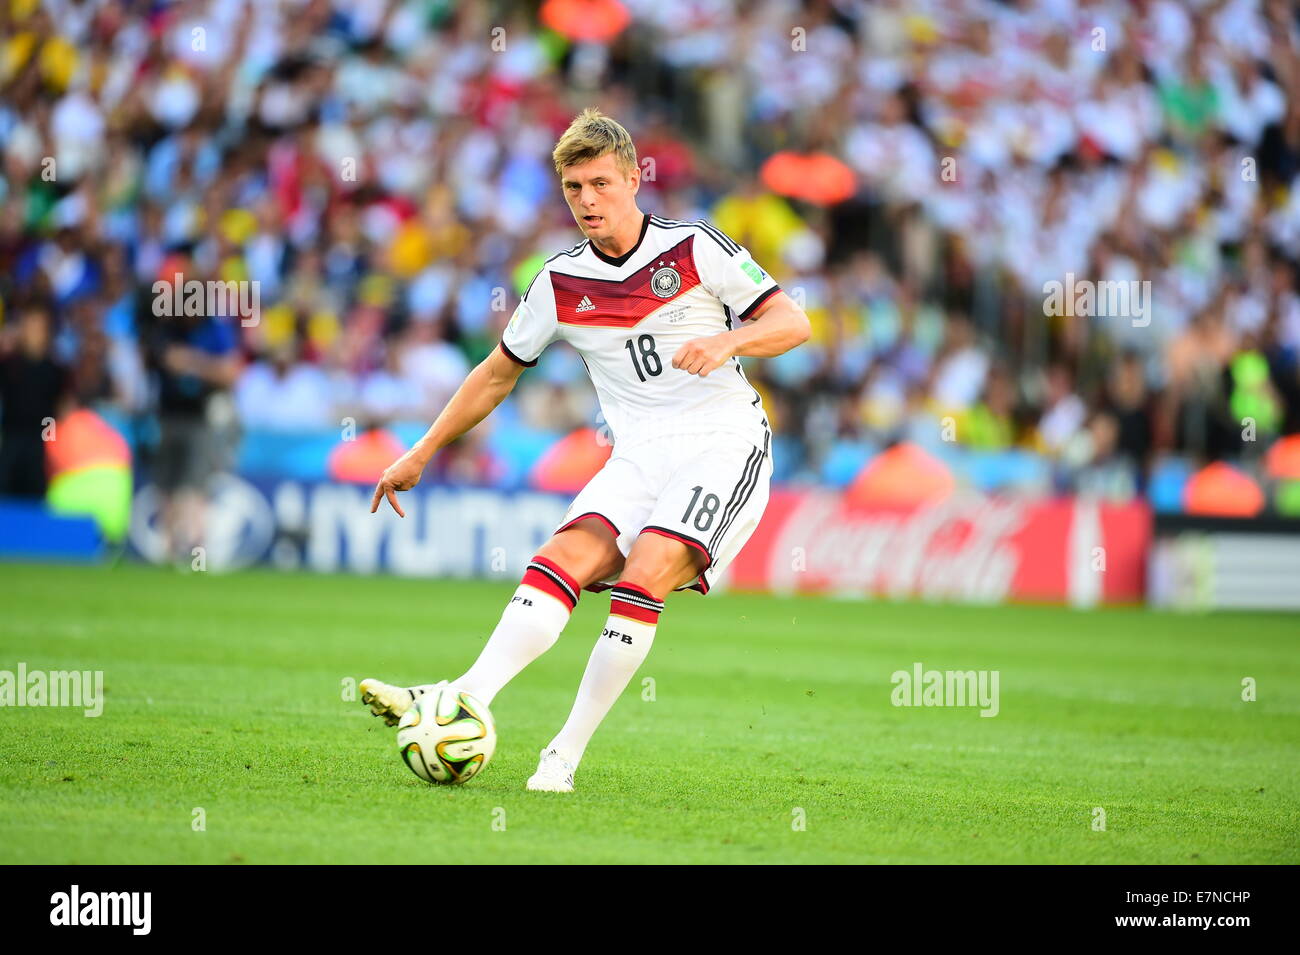 Toni KROOS. Argentina v Germany. Final. FIFA World Cup 2014 Brazil. Maracana Stadium, Rio. 13 July 2014. Stock Photo